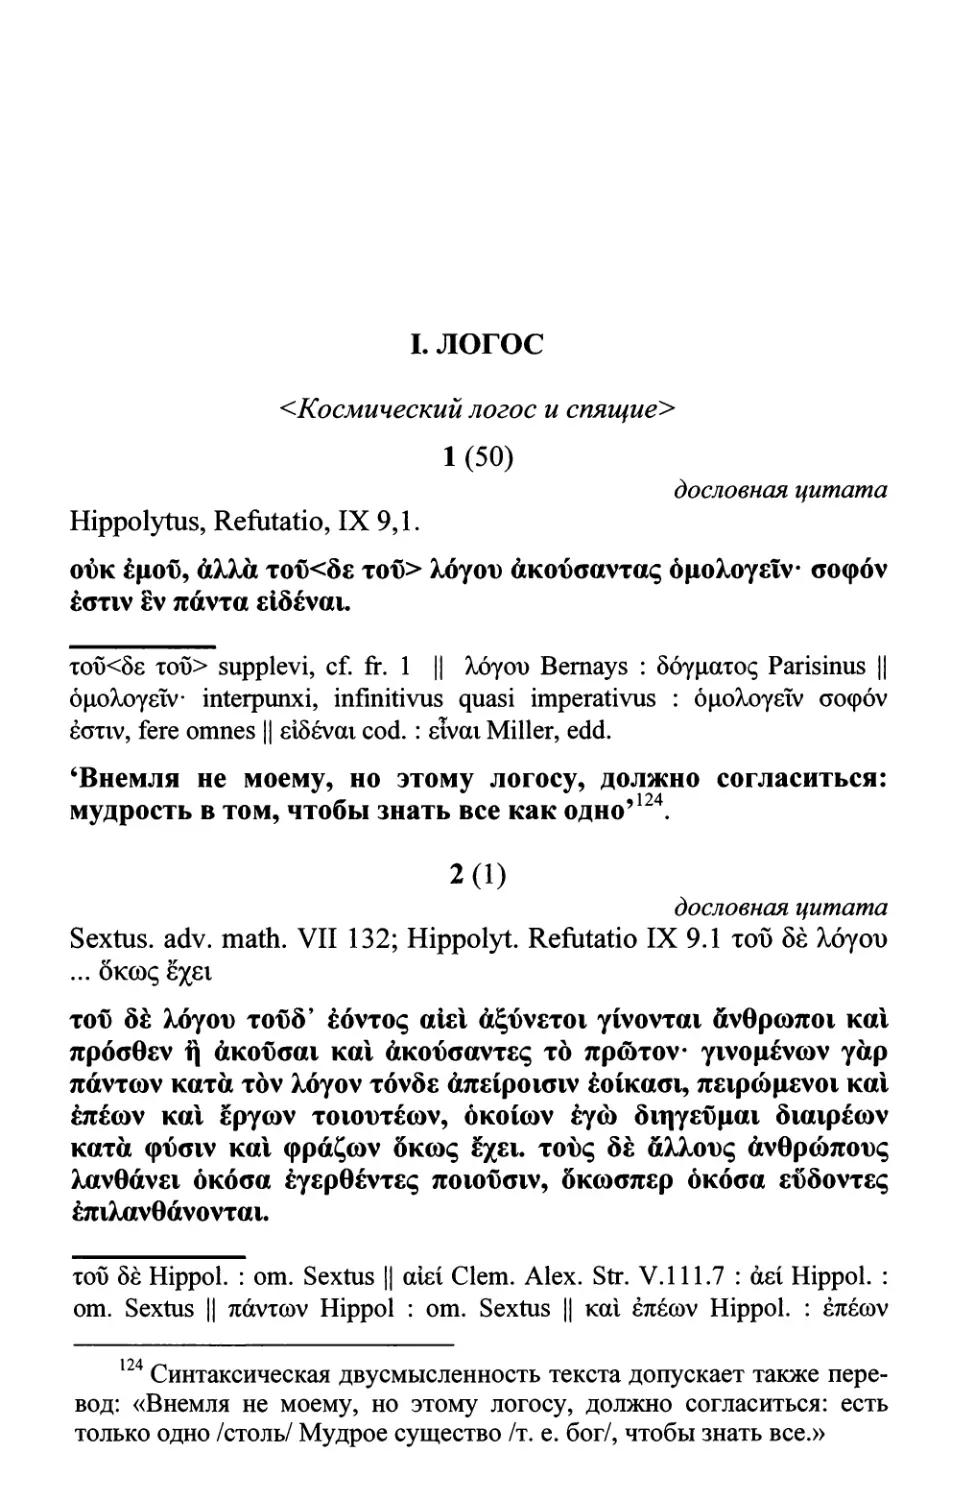 Греческий текст и русский перевод